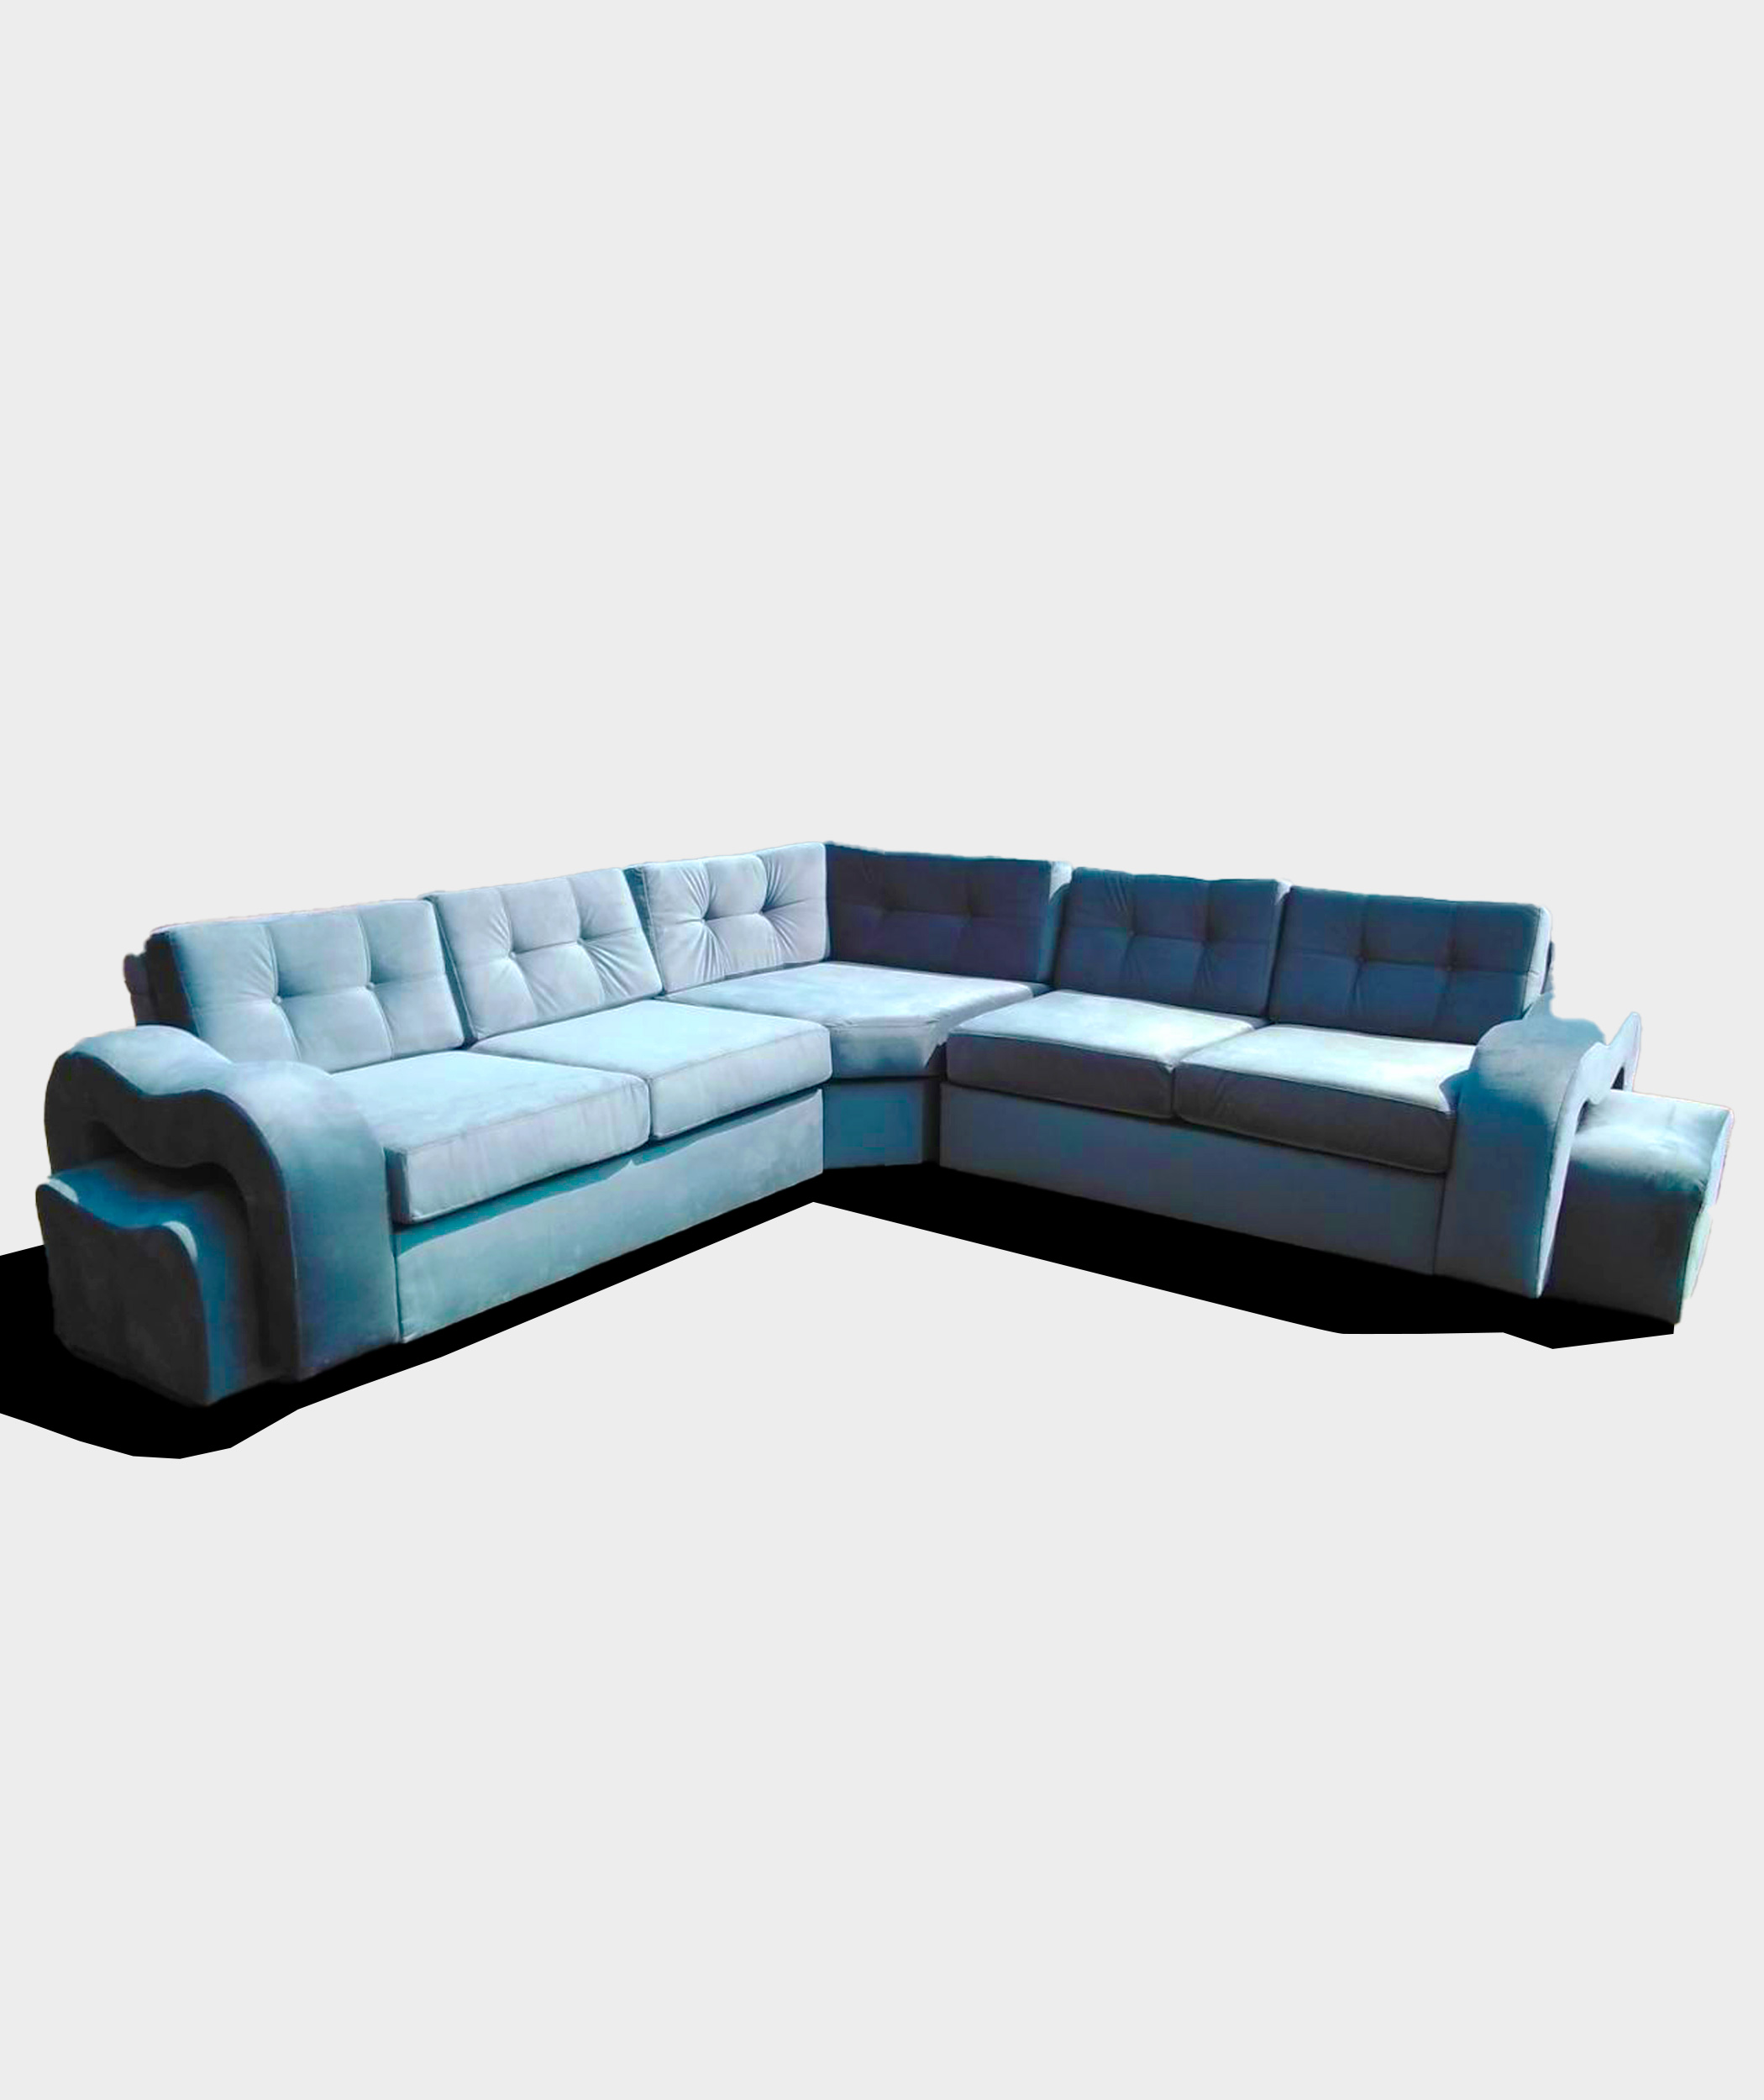 Dongmo Furniture - Springbok Couch